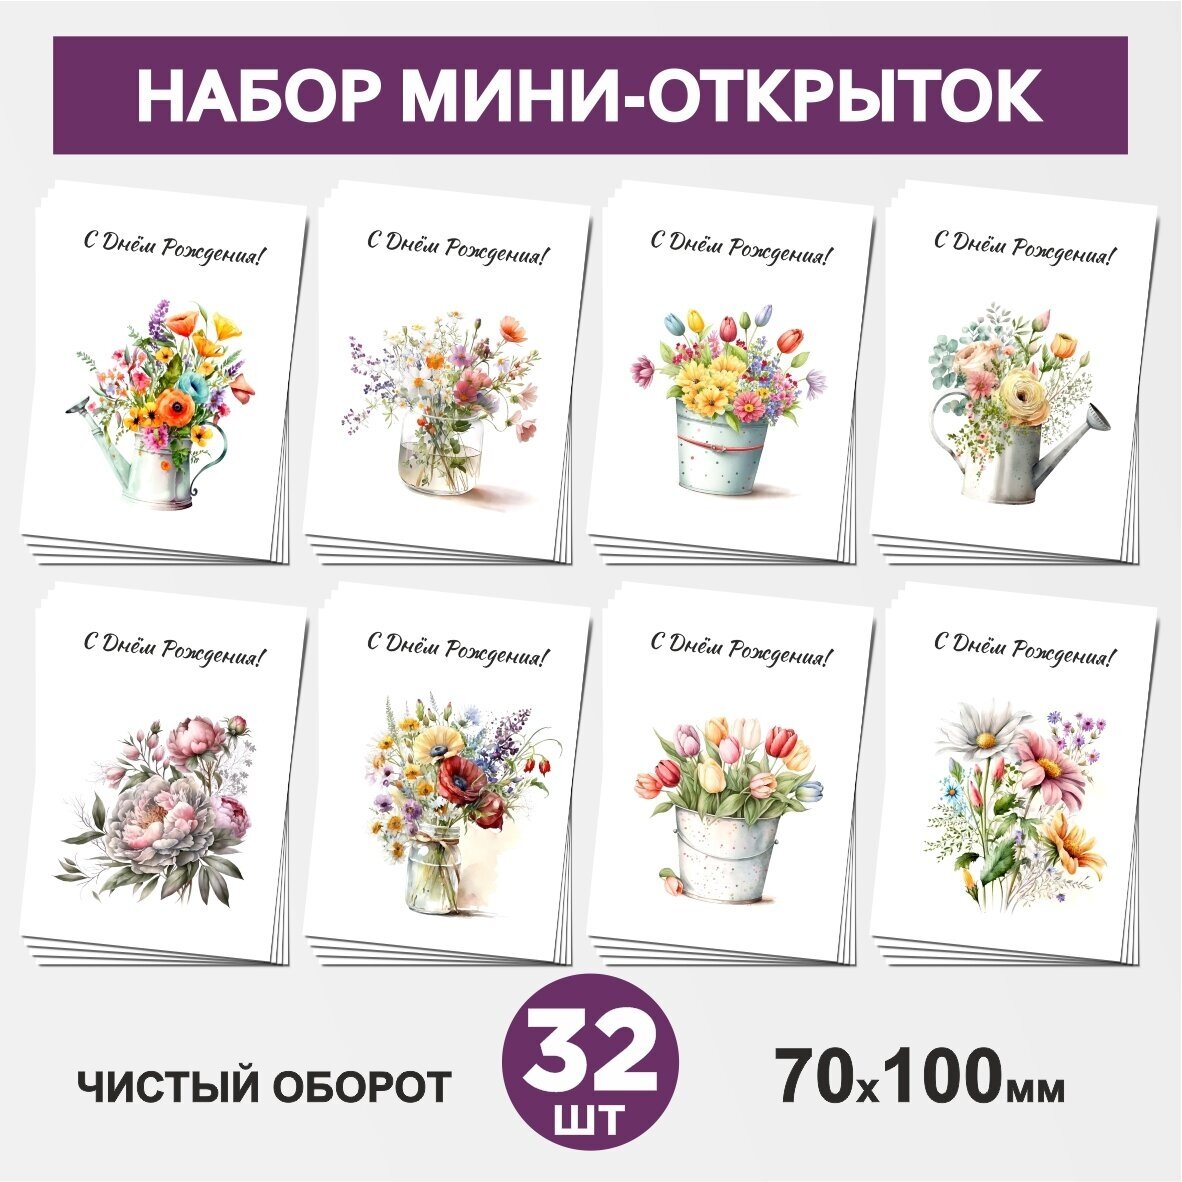 Набор мини-открыток 32 шт, 70х100мм, бирки, карточки, открытки для подарков на Юбилей, День Рождения - Цветы №8.1, postcard_32_flowers_set_8.1